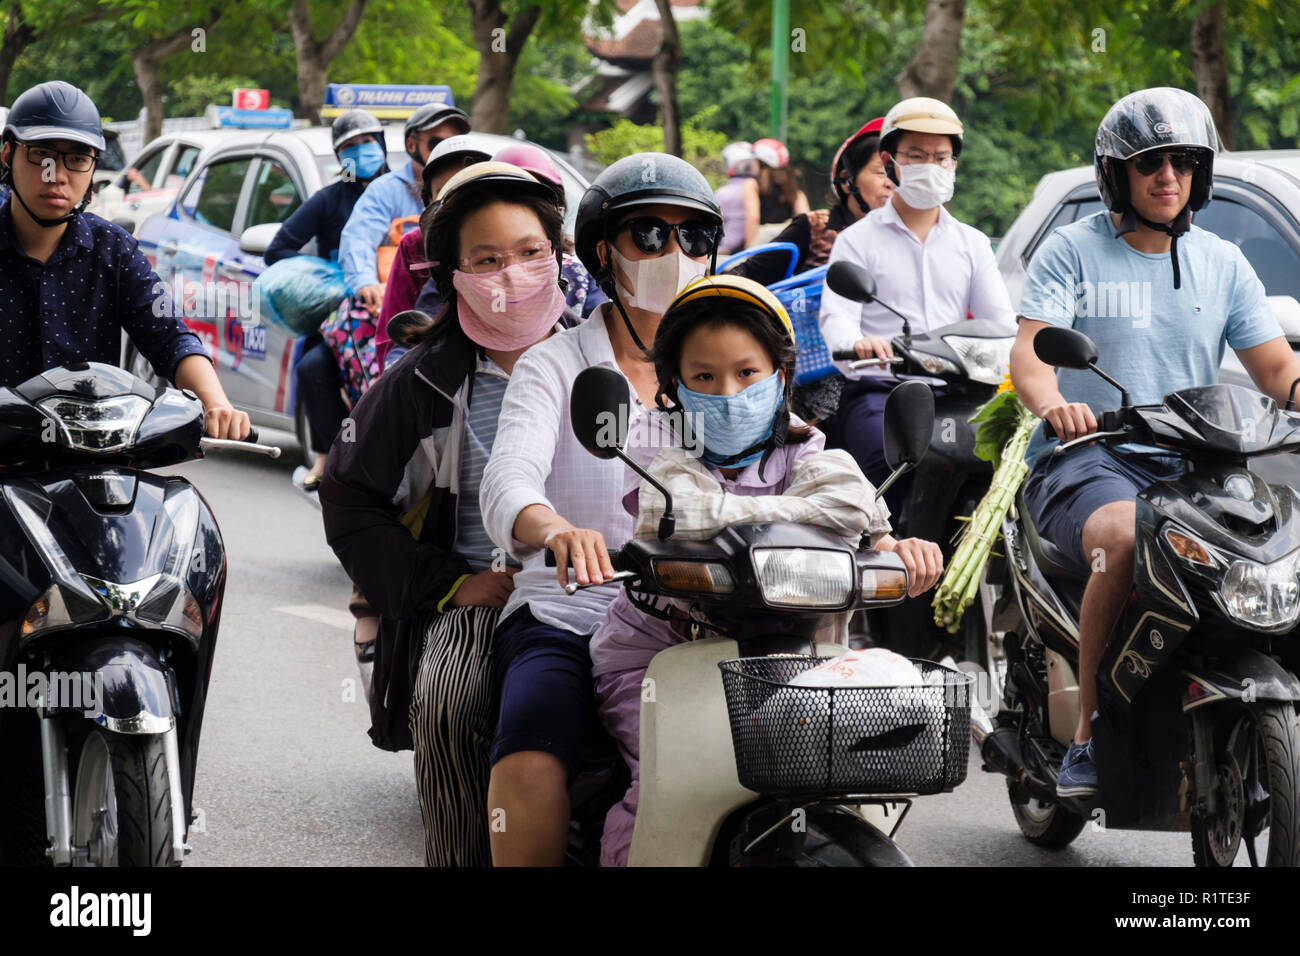 Escena callejera con personas vestidas con máscaras en motocicletas y scooters para proteger contra la contaminación del aire urbano en una concurrida calle. Hanoi, Vietnam, Asia Foto de stock